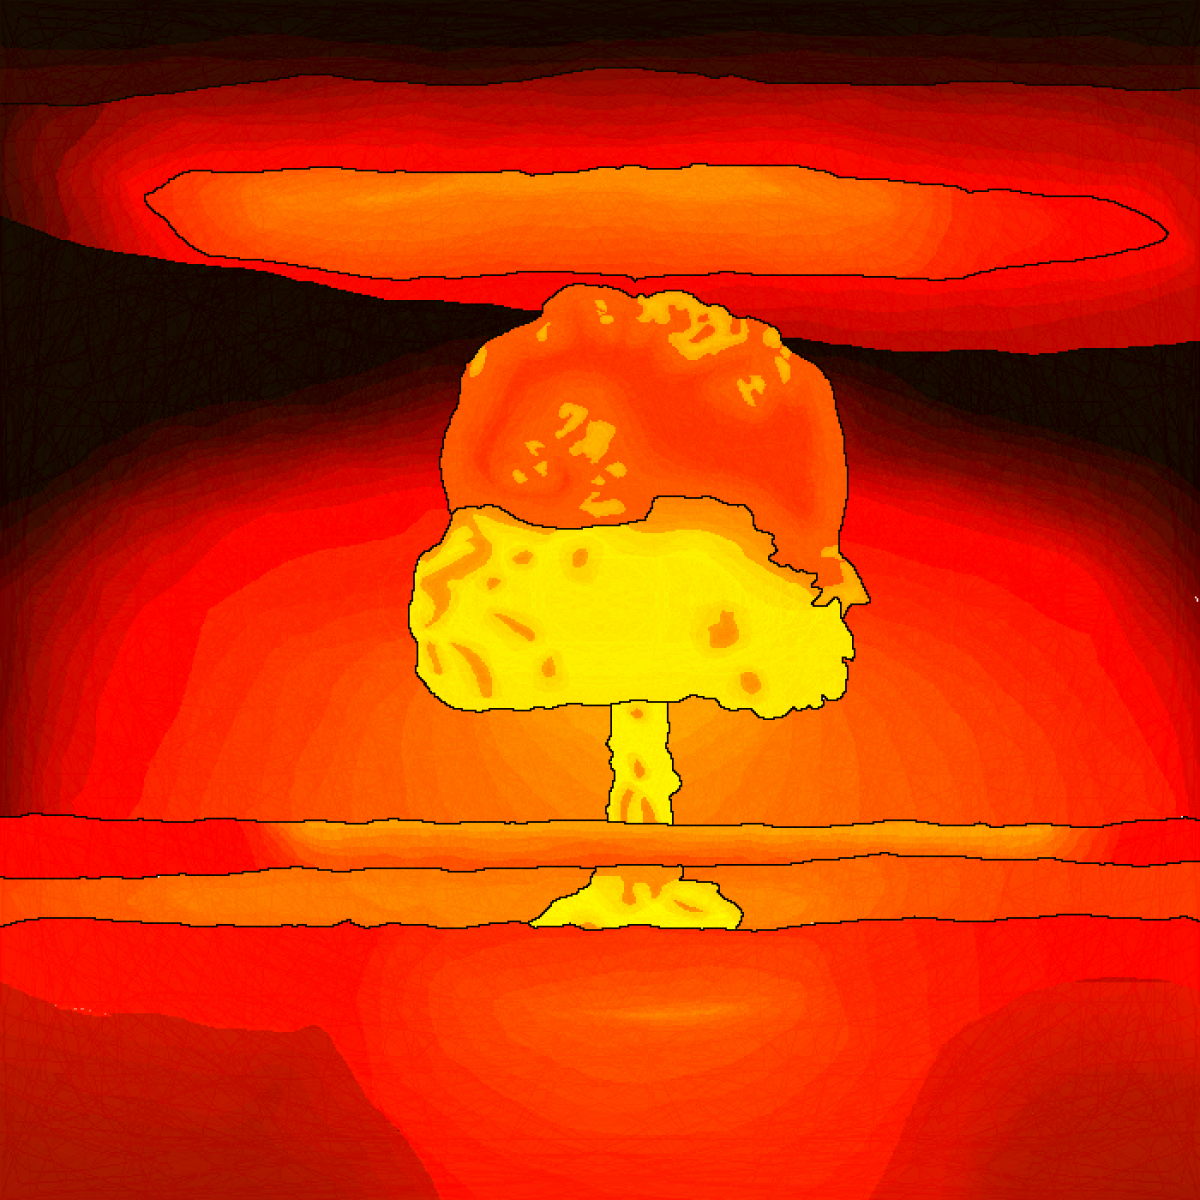 Атомный гриб. Ядерный взрыв арт. Ядерный гриб арт. Атомный взрыв арт. Взрыв ядерный гриб.